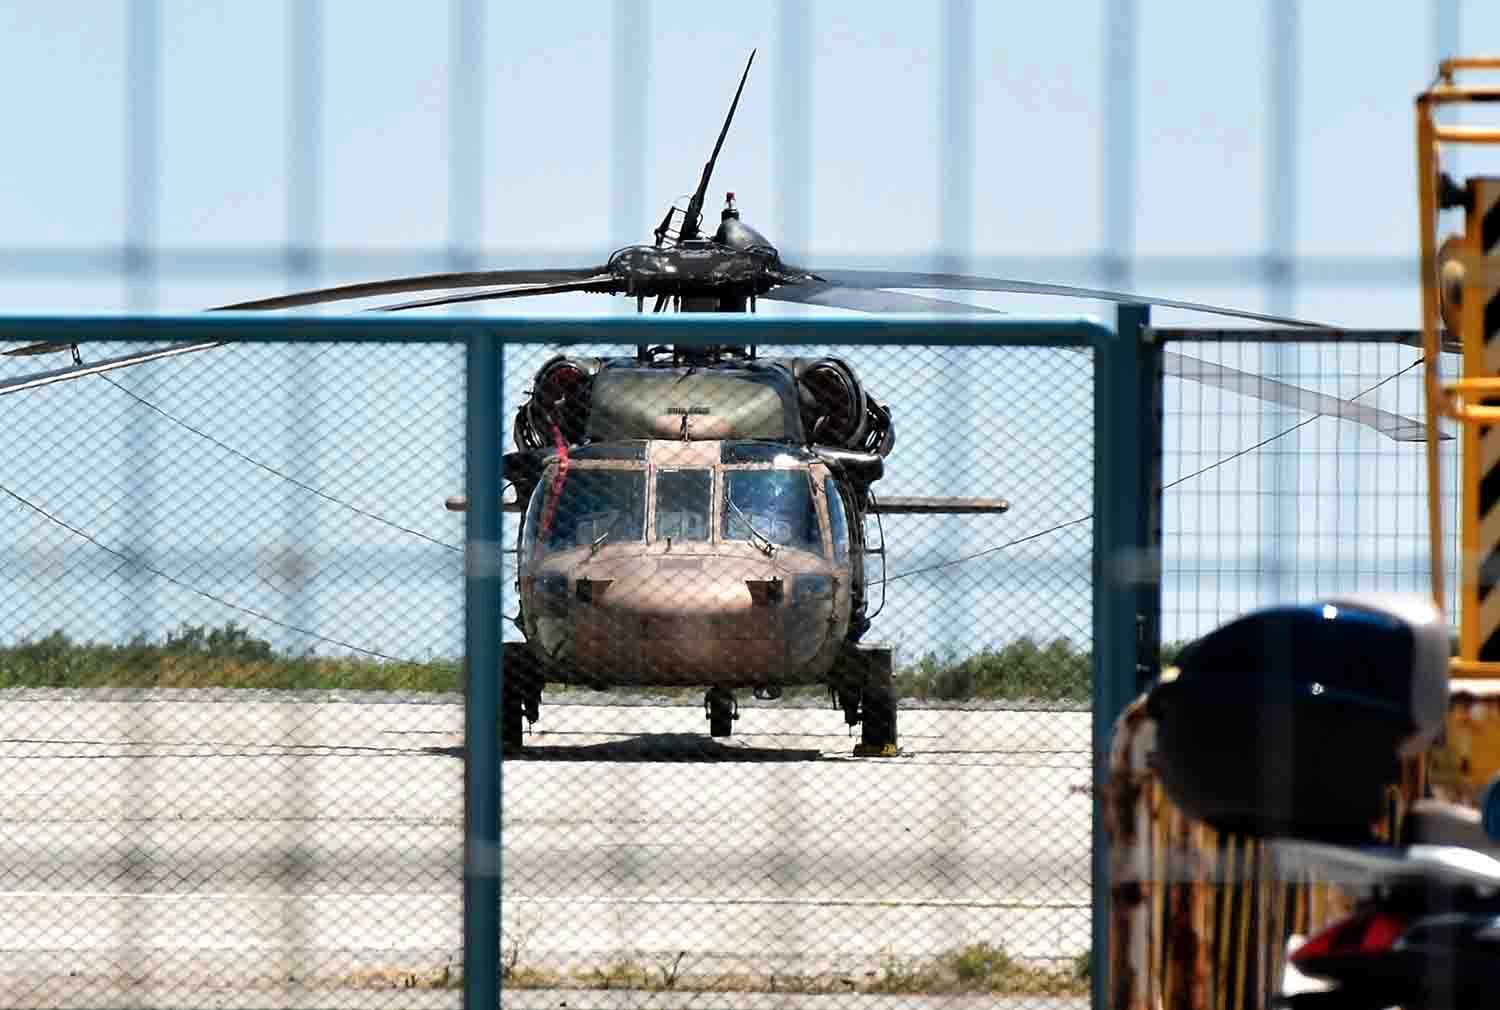 Den turkiska militärhelikoptern landade i Grekland tidigare idag. Åtta passagerare färdades i helikoptern och ska enligt uppgifter ha sökt asyl i Grekland.